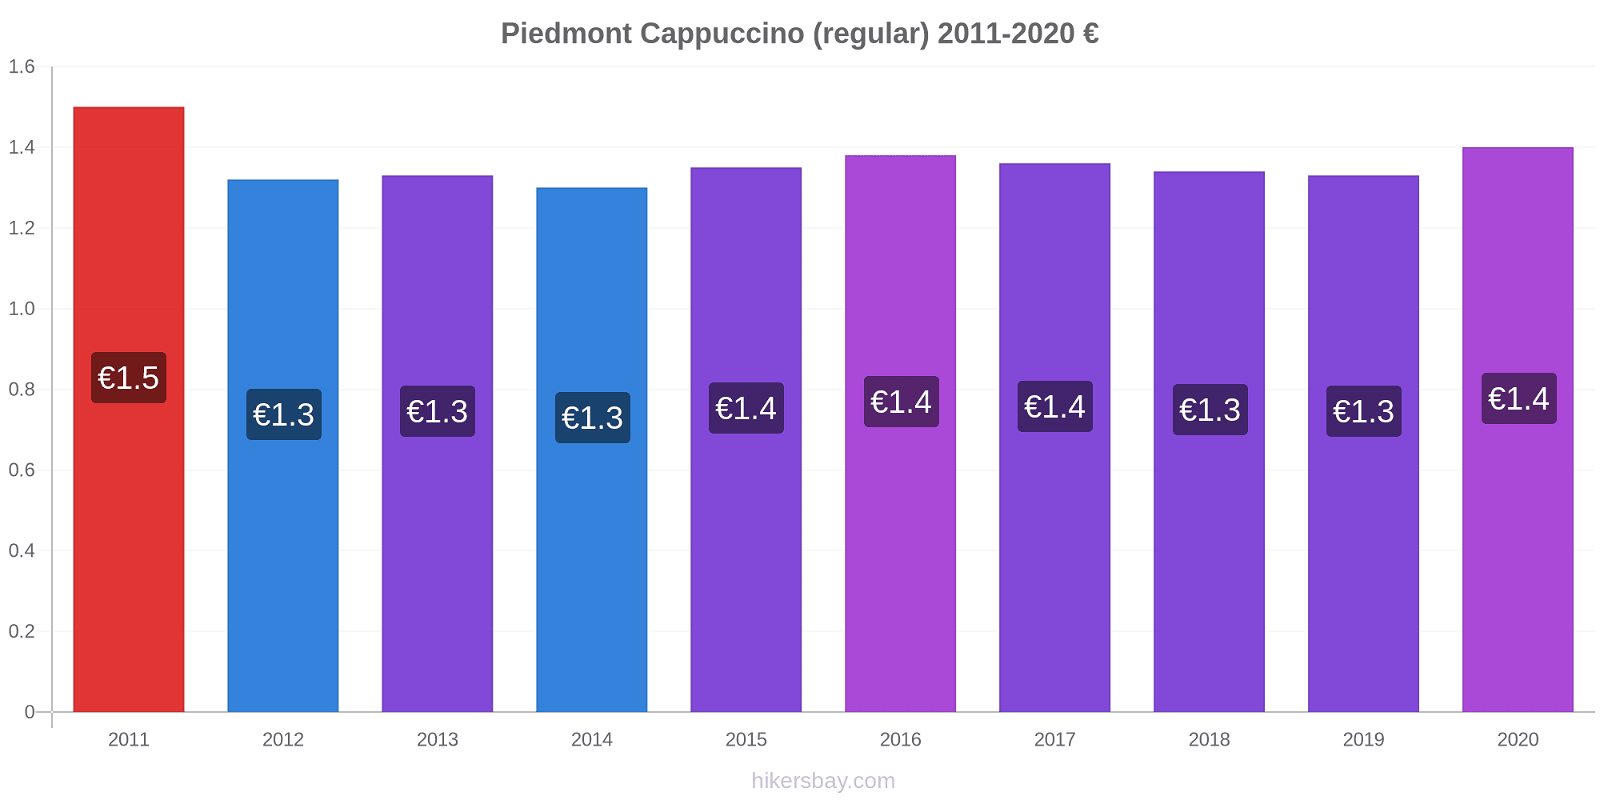 Piedmont price changes Cappuccino (regular) hikersbay.com